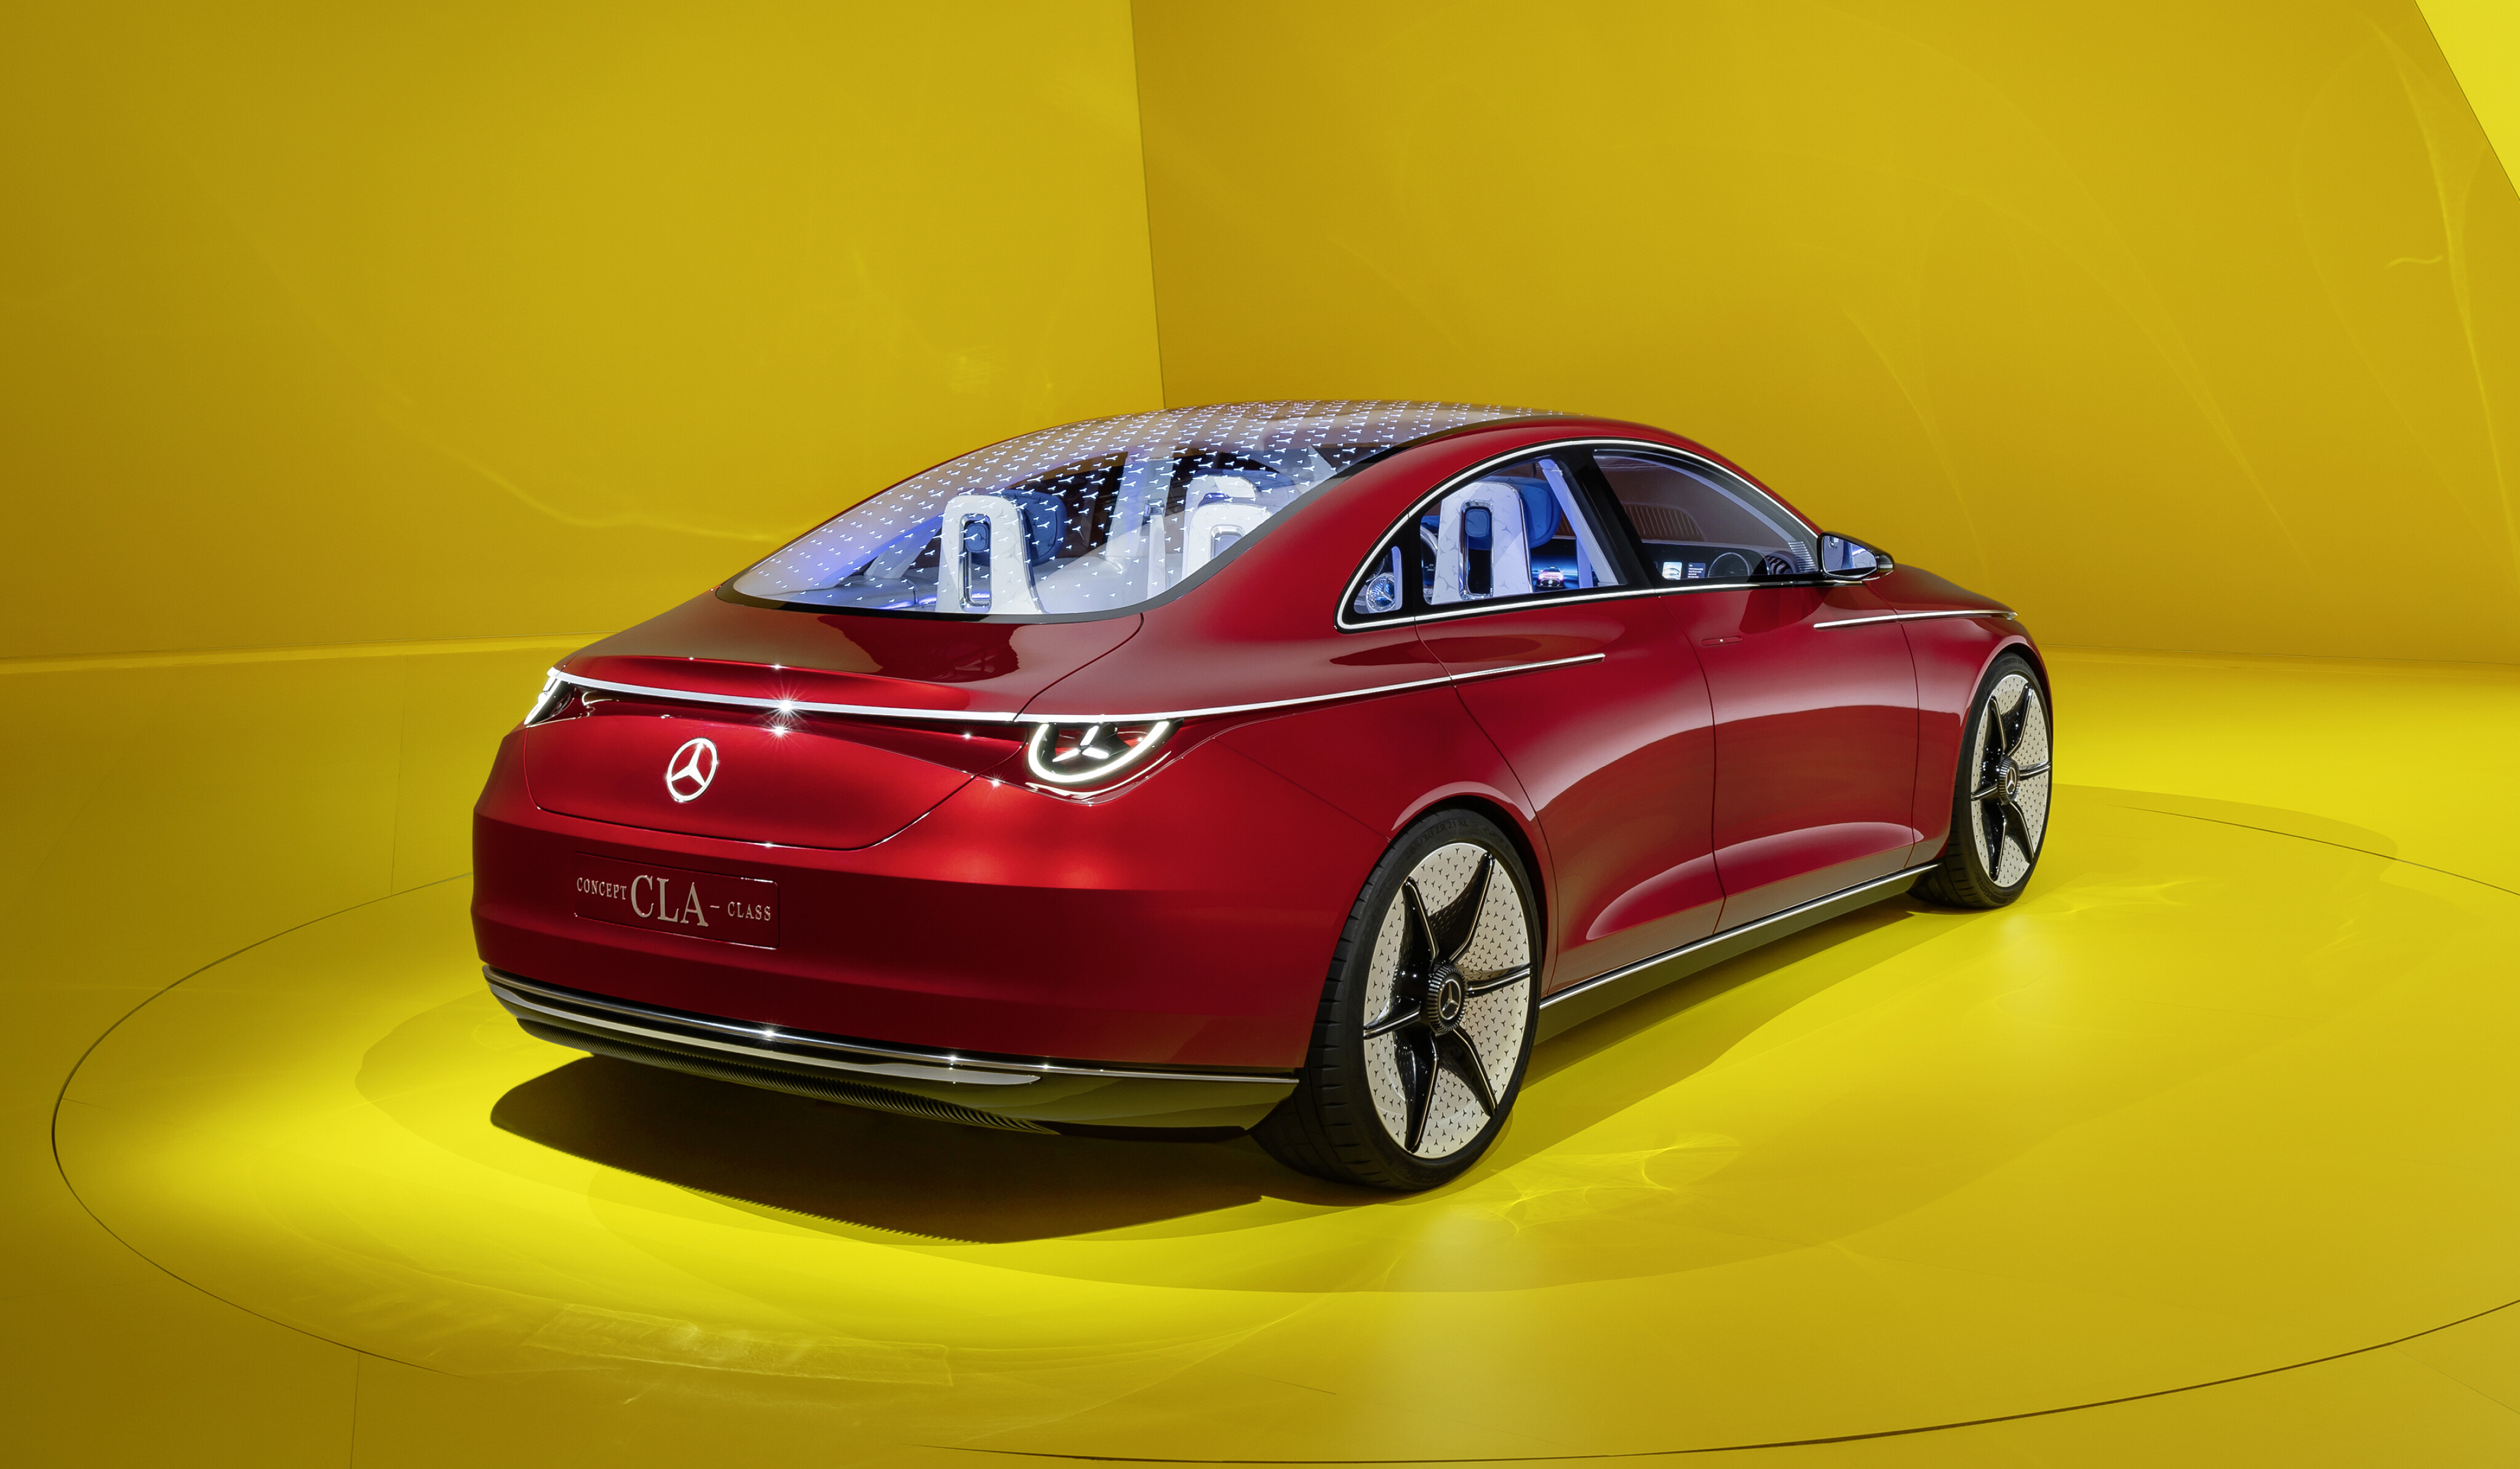 Mercedes CLA concept previews Tesla Model 3 rival